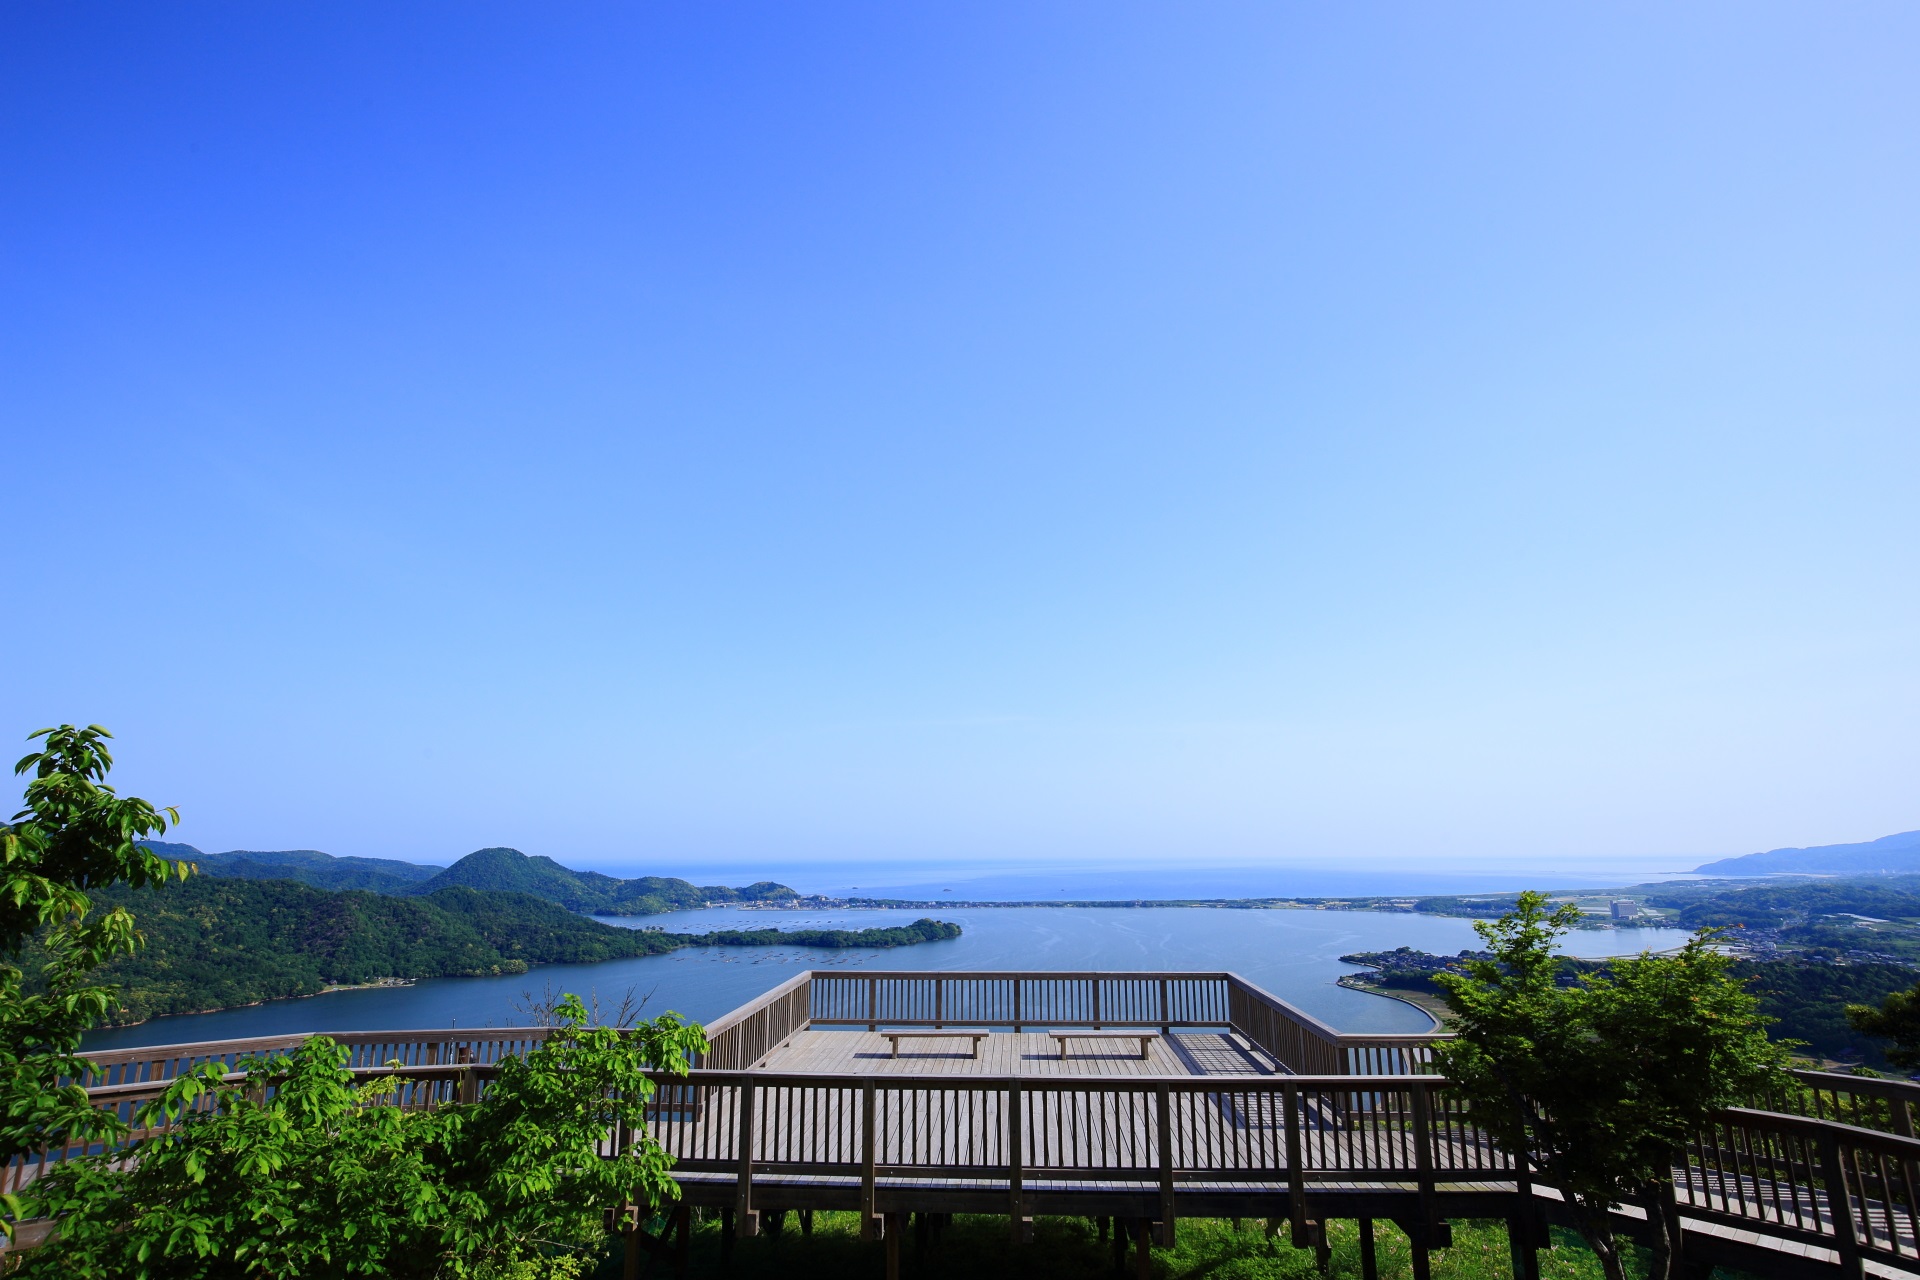 綺麗な木造の展望台から眺める久美浜湾と日本海の絶景